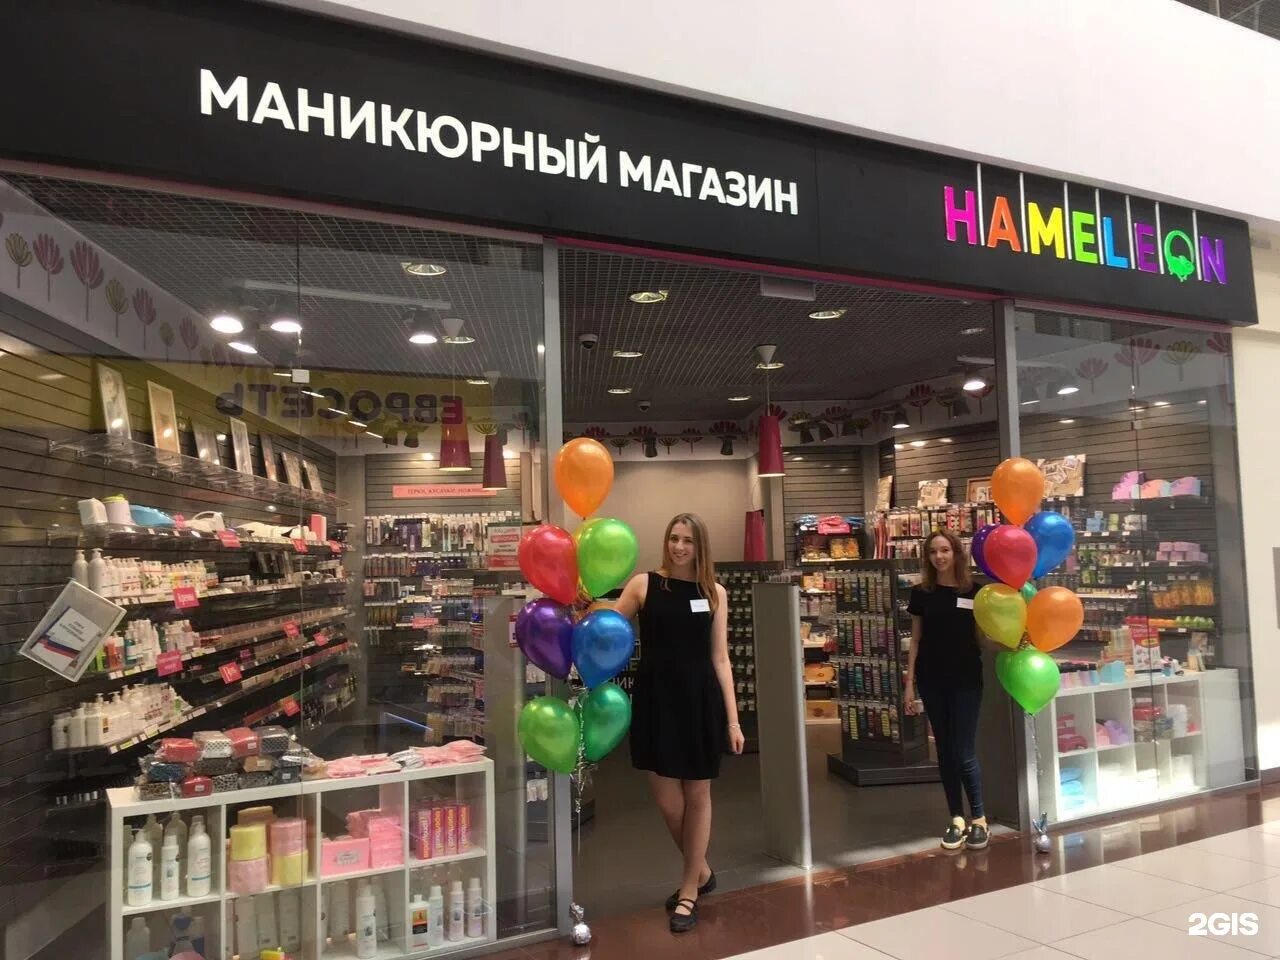 Хамелеон магазин новосибирск